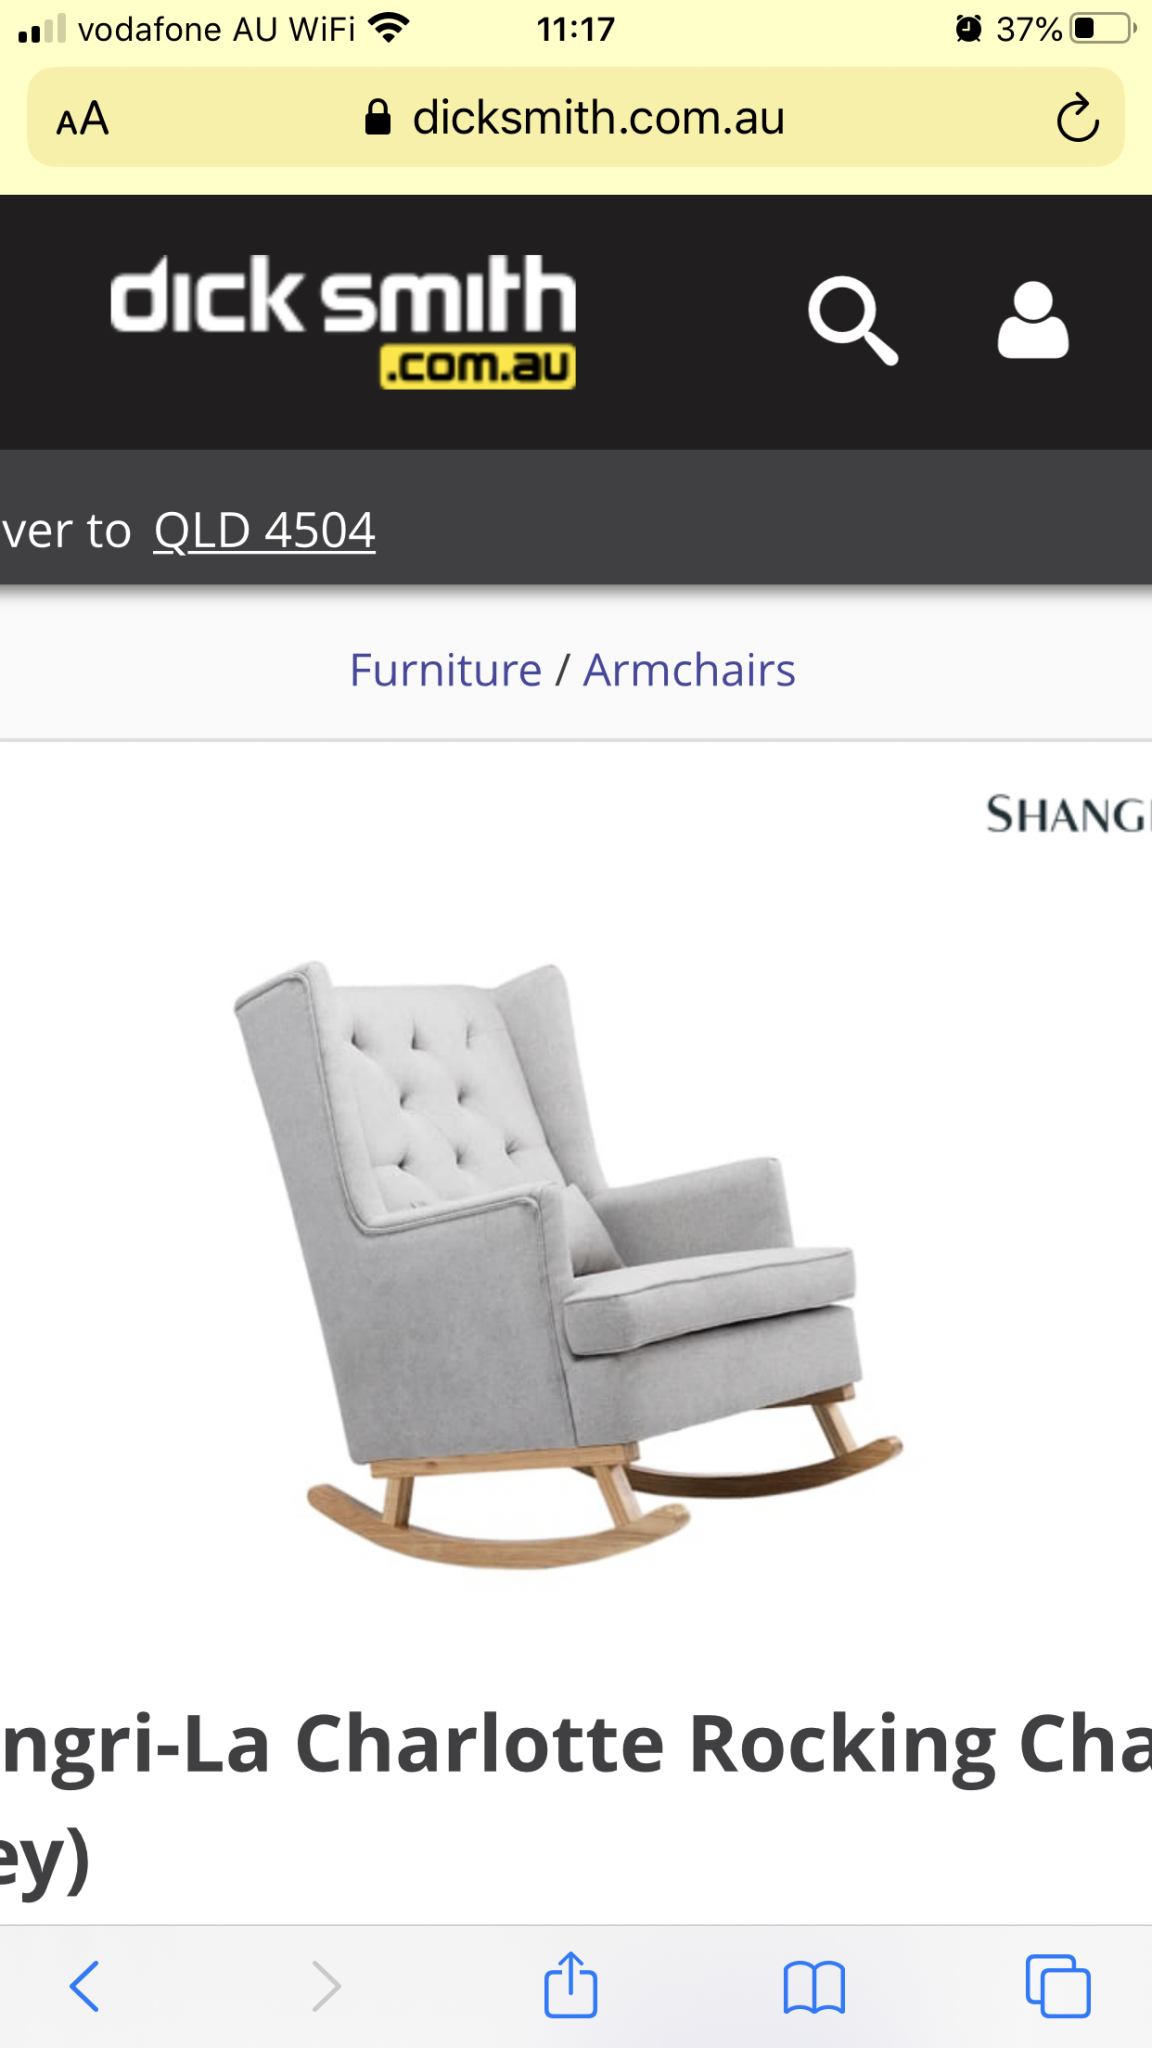 Shangri-La Charlotte Rocking Chair (Grey)